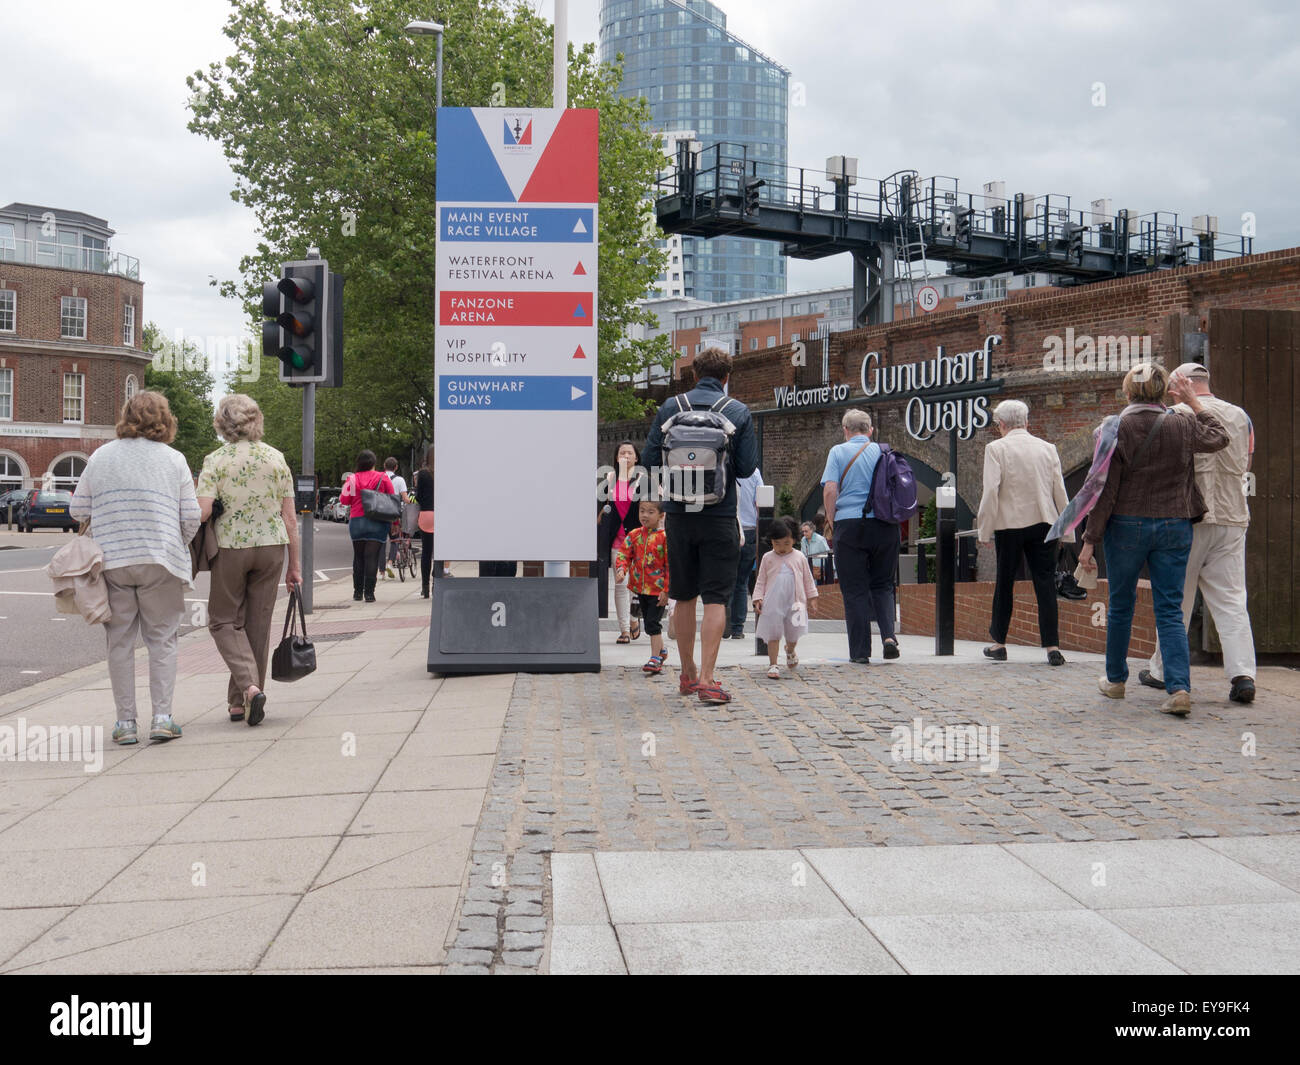 Ce qui permettra aux visiteurs de signes les directions jusqu'à l'America's Cup World Series événements autour de la ville de Portsmouth, Angleterre Banque D'Images